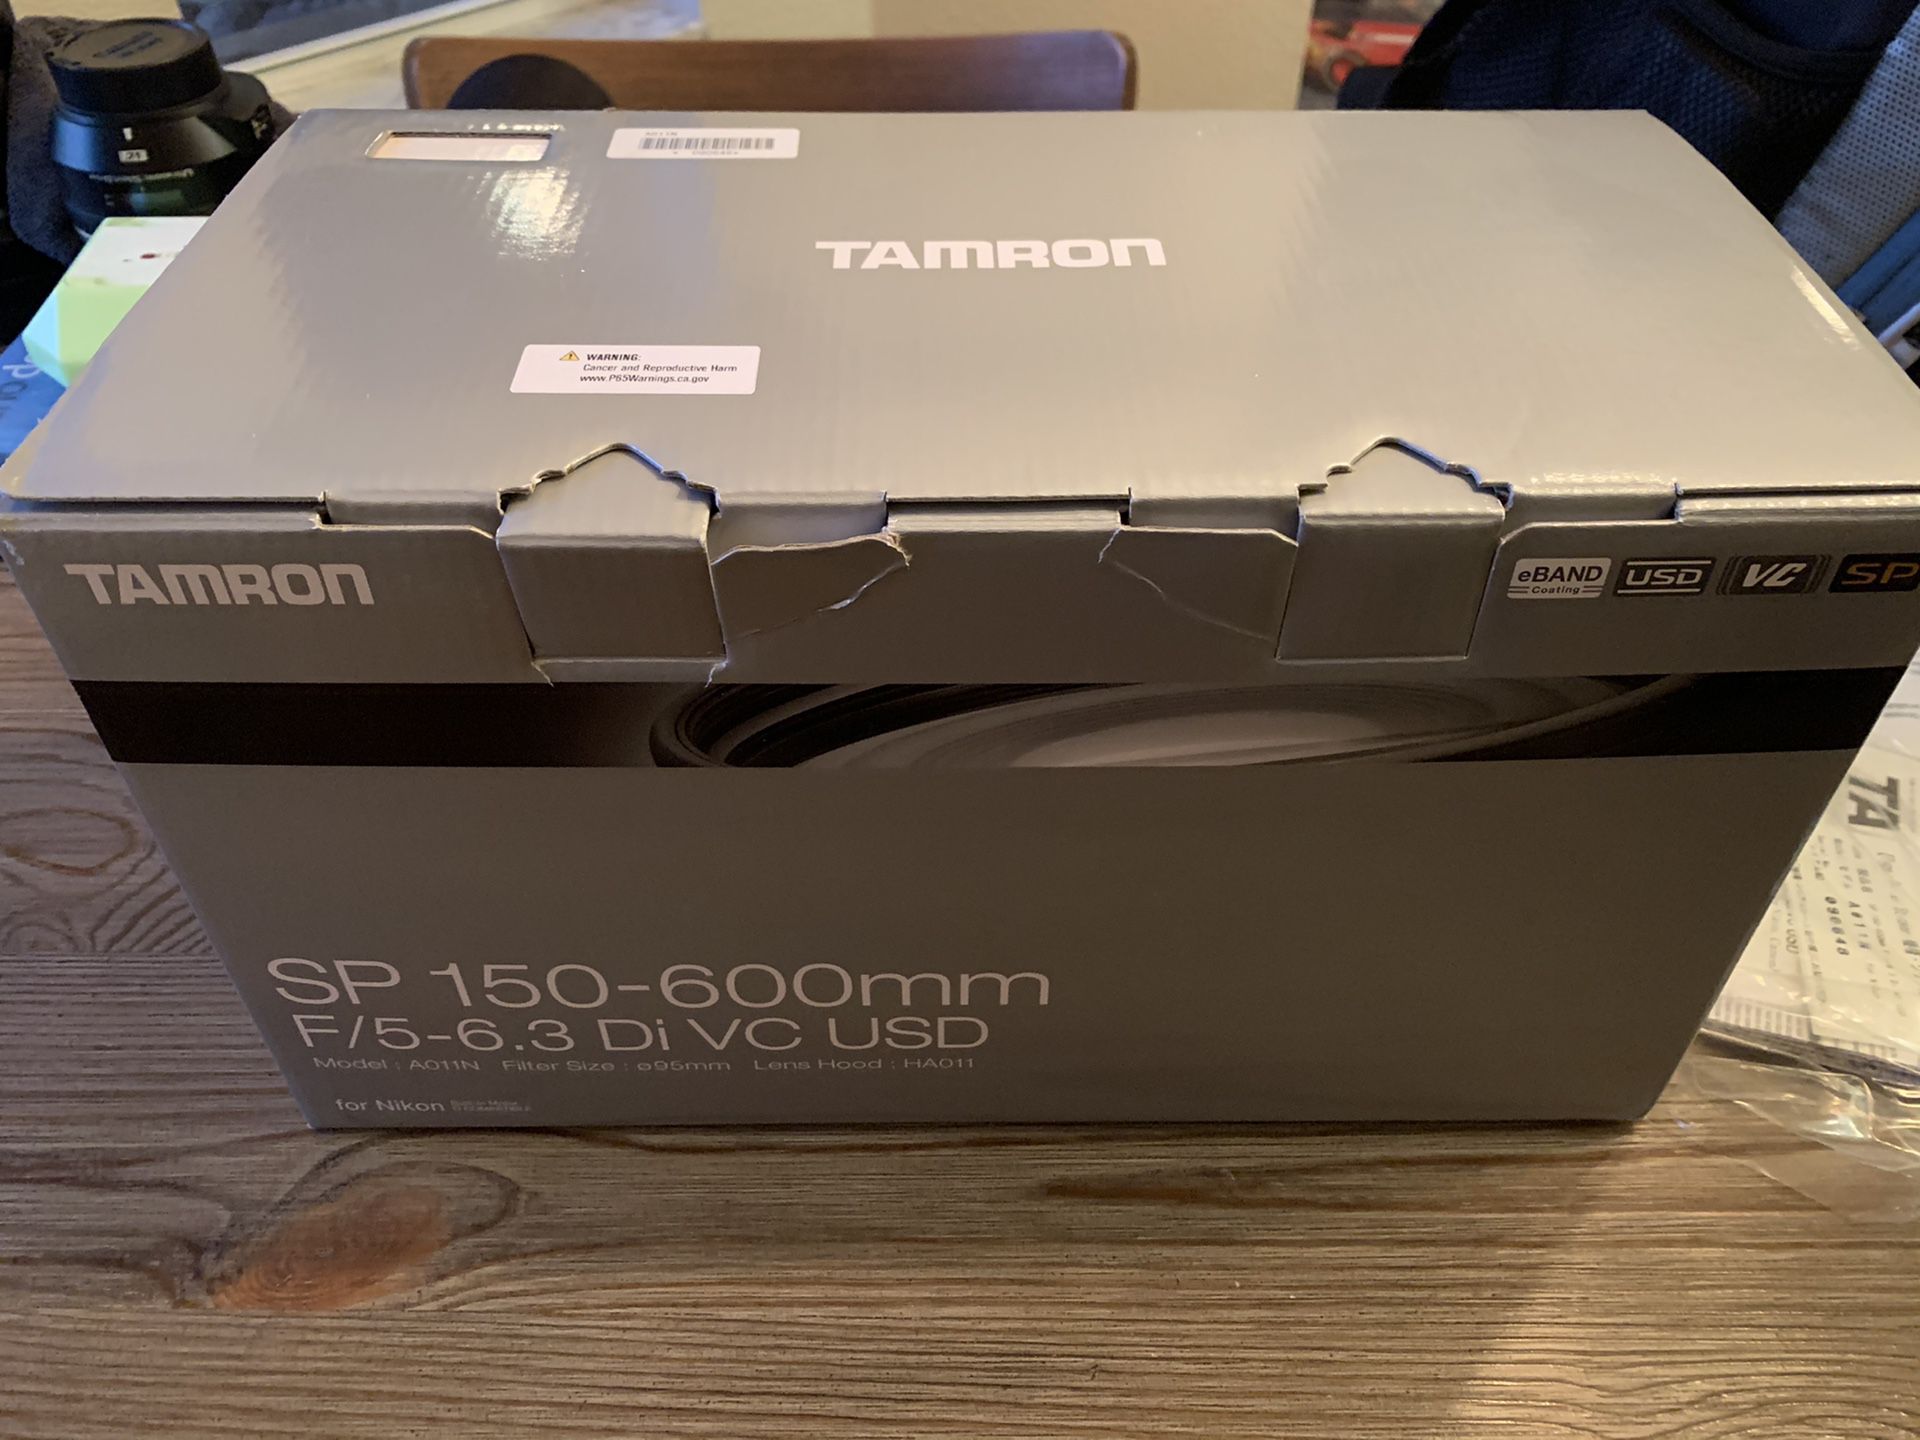 The Tamron SP 150-600mm f/5-6.3 Di VC USD (A011N) is a super-telephoto autofocus zoom lens for Nikon